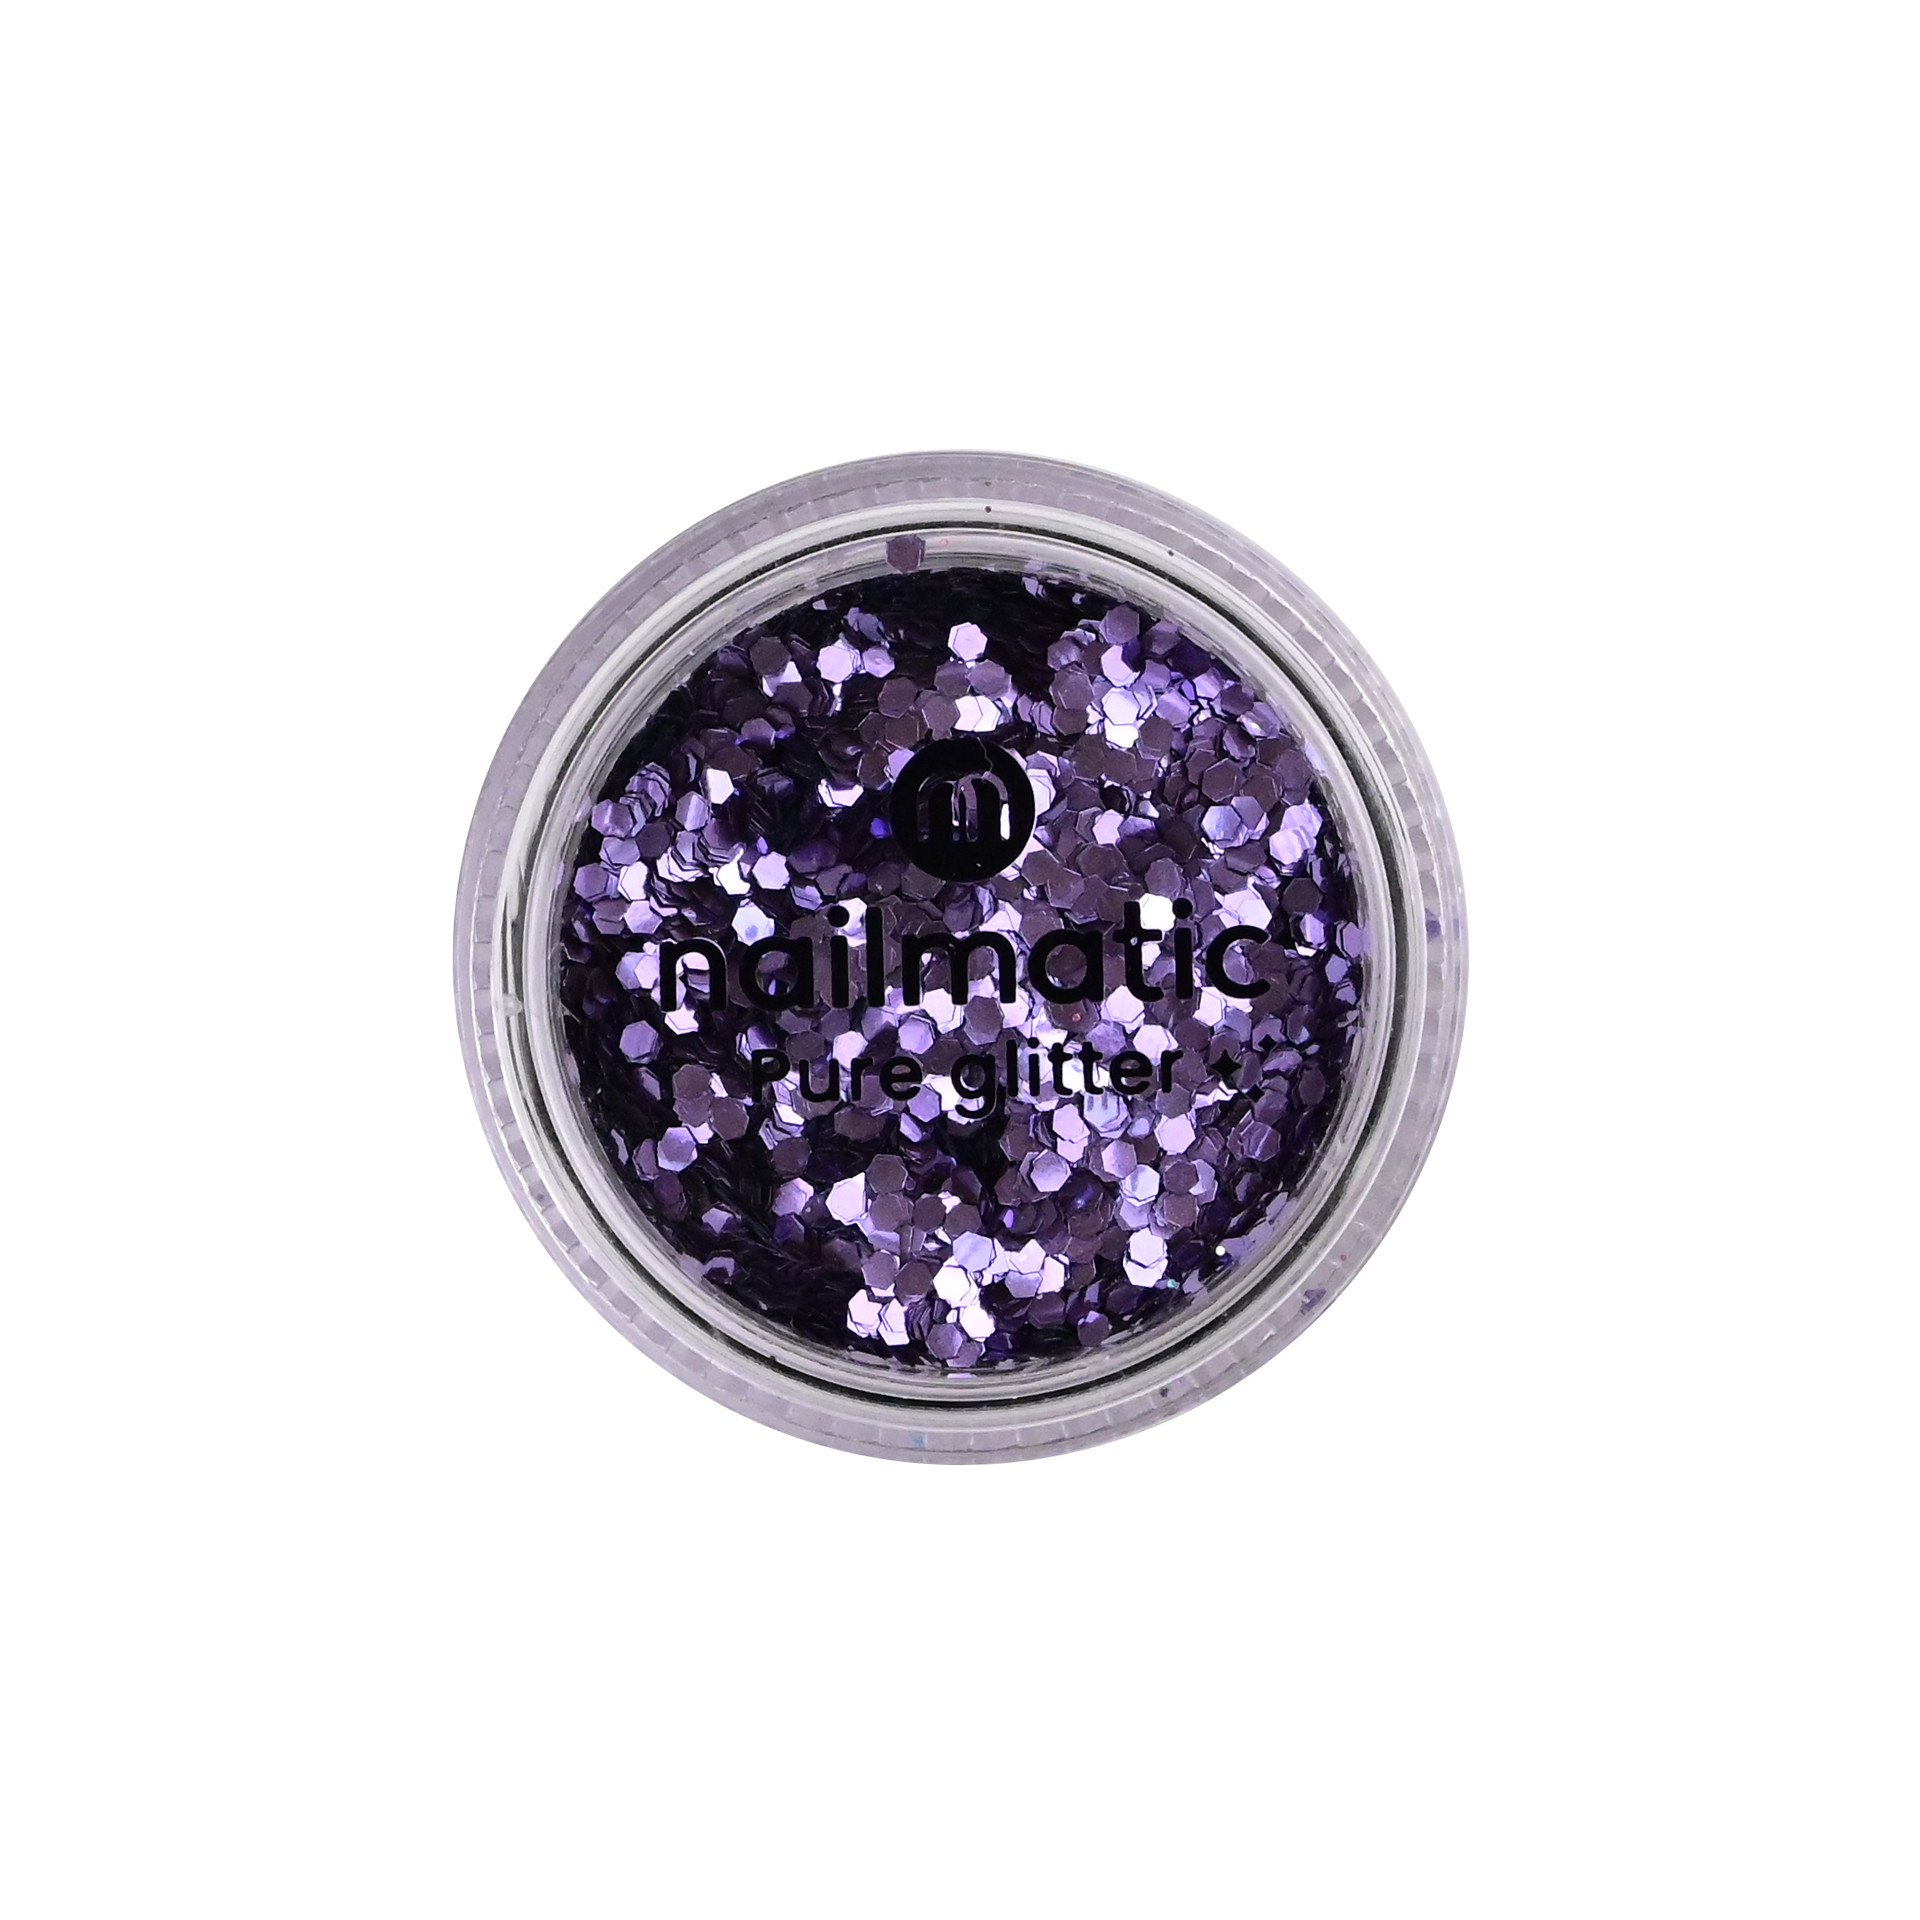 Grandes paillettes violettes biodégradables Pure Glitter avec packaging logo